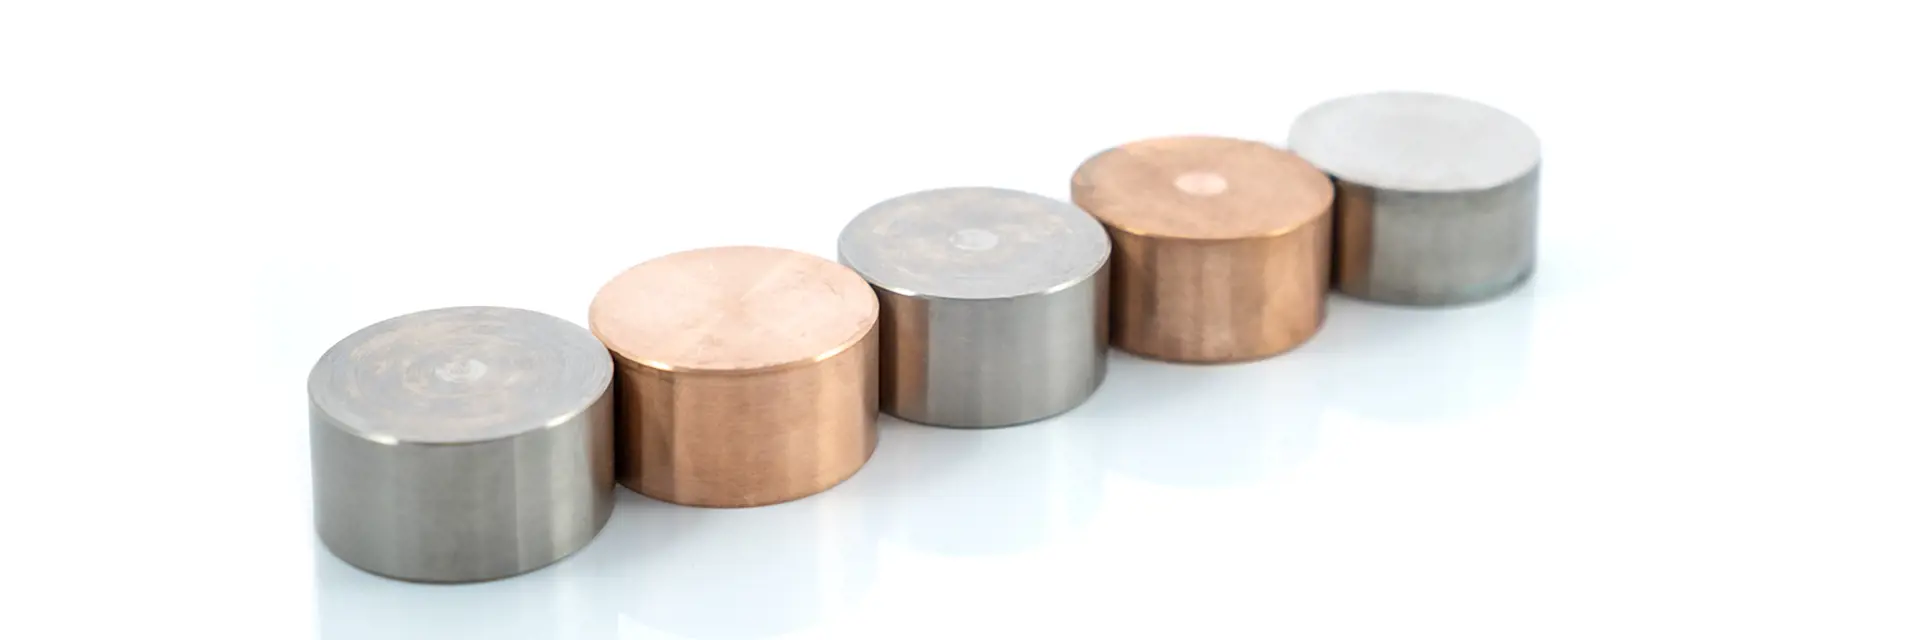 Metallproben auf Eisen und Kupferbasis von Brammer Standard